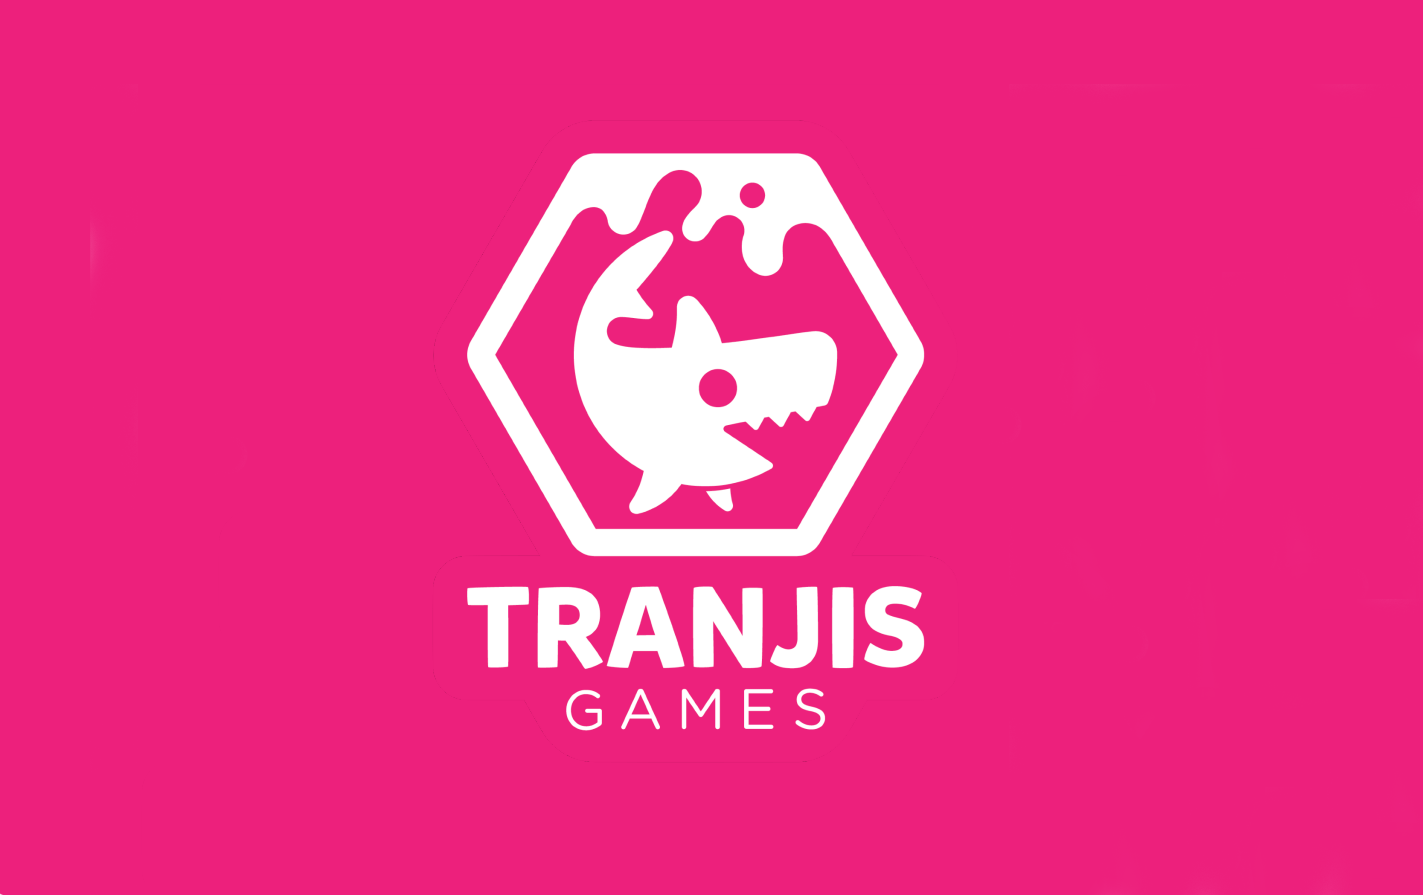 Tranjis Games anuncia los juegos que publicará a lo largo de este año